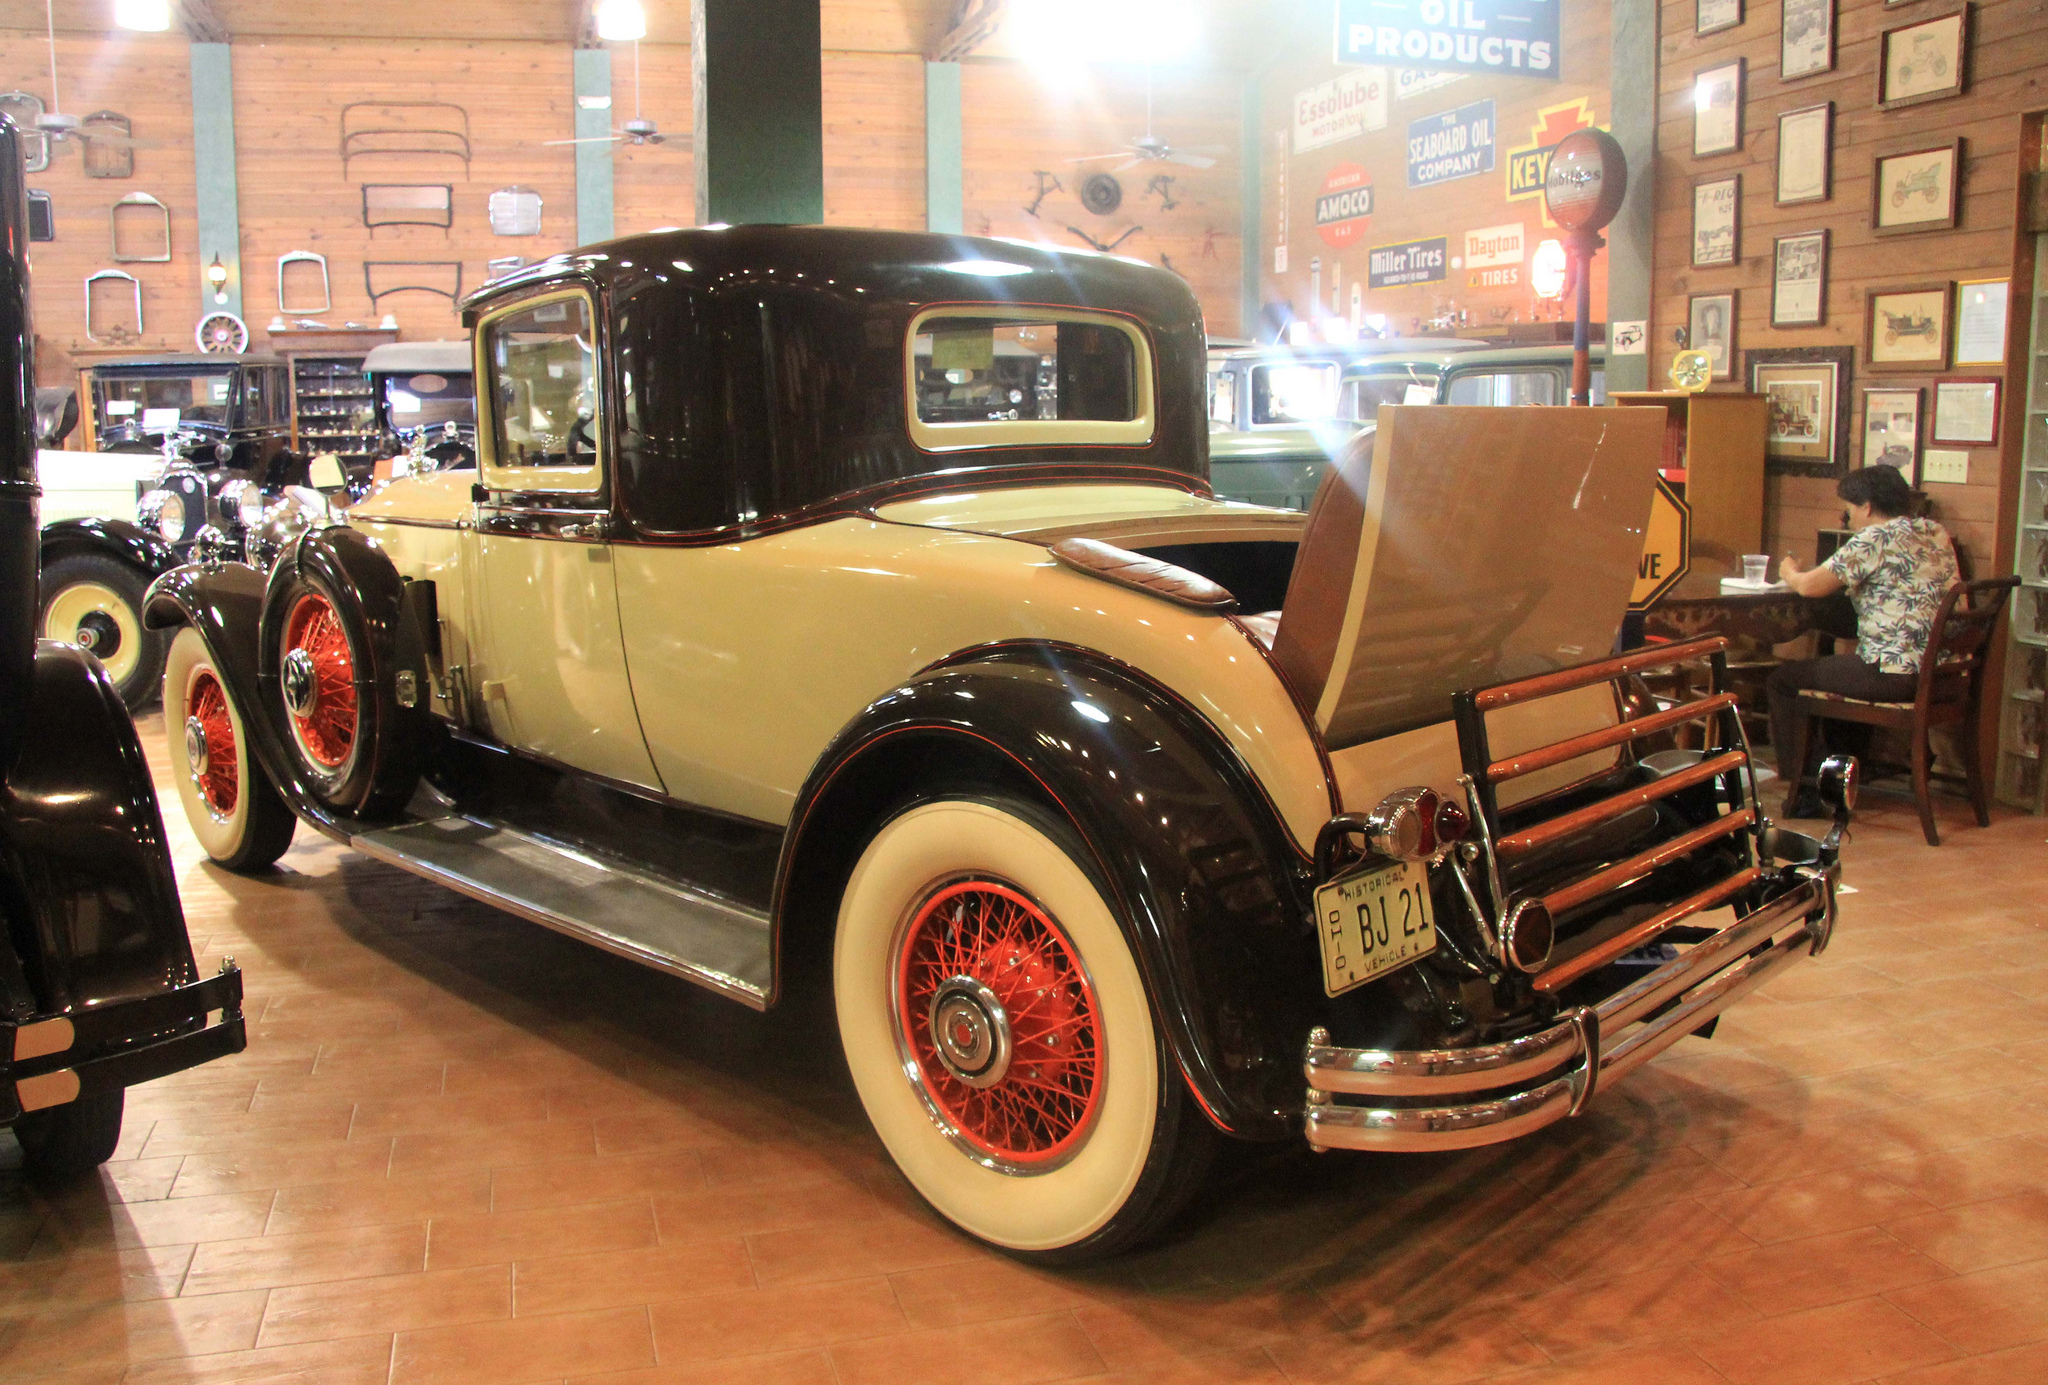 Impressive photos of the Fort Lauderdale Antique Car Museum | BOOMSbeat